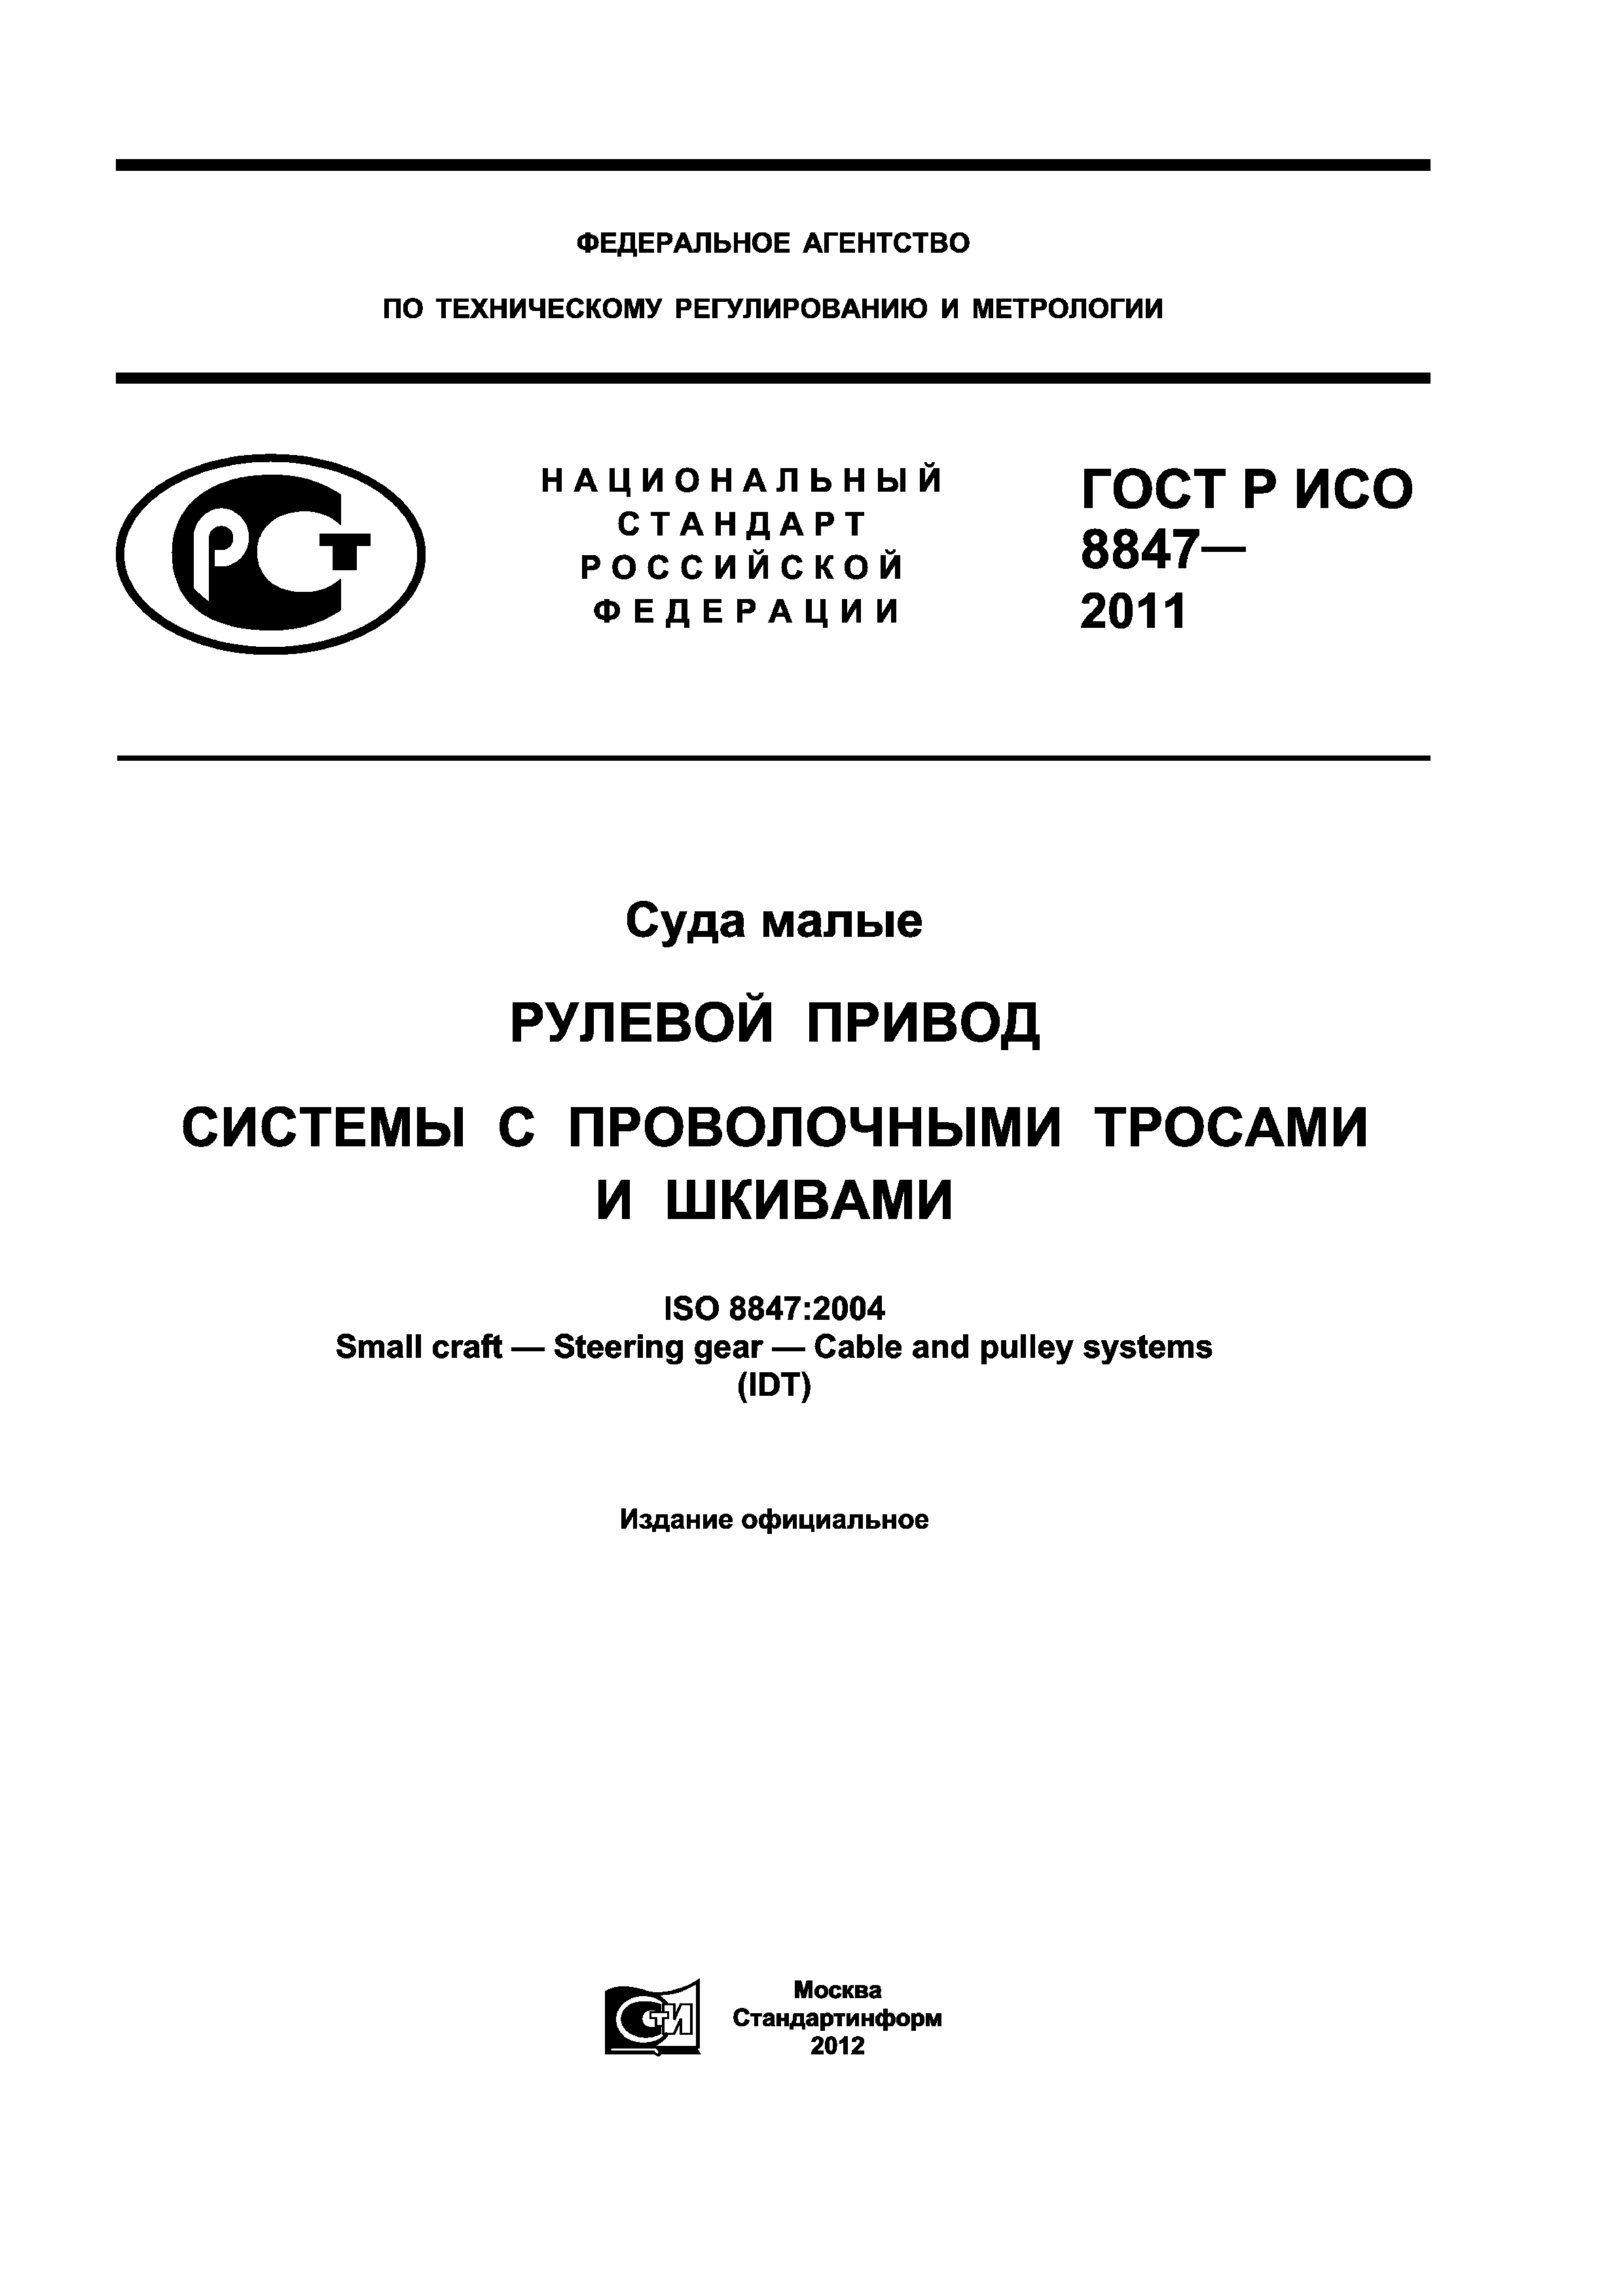 ГОСТ Р ИСО 8847-2011